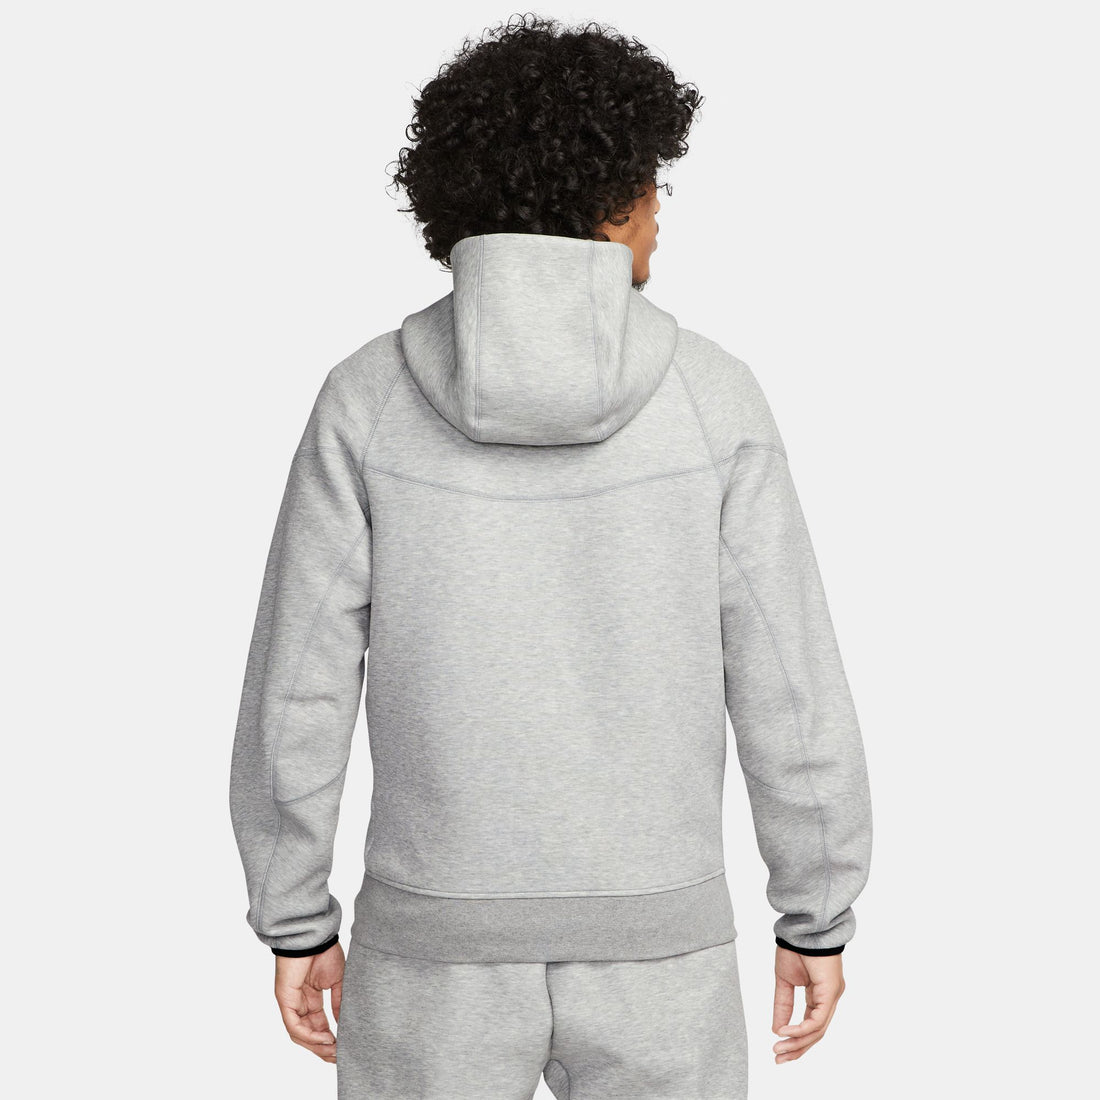 Nike Sportswear Tech Fleece Windrunner (Grey)